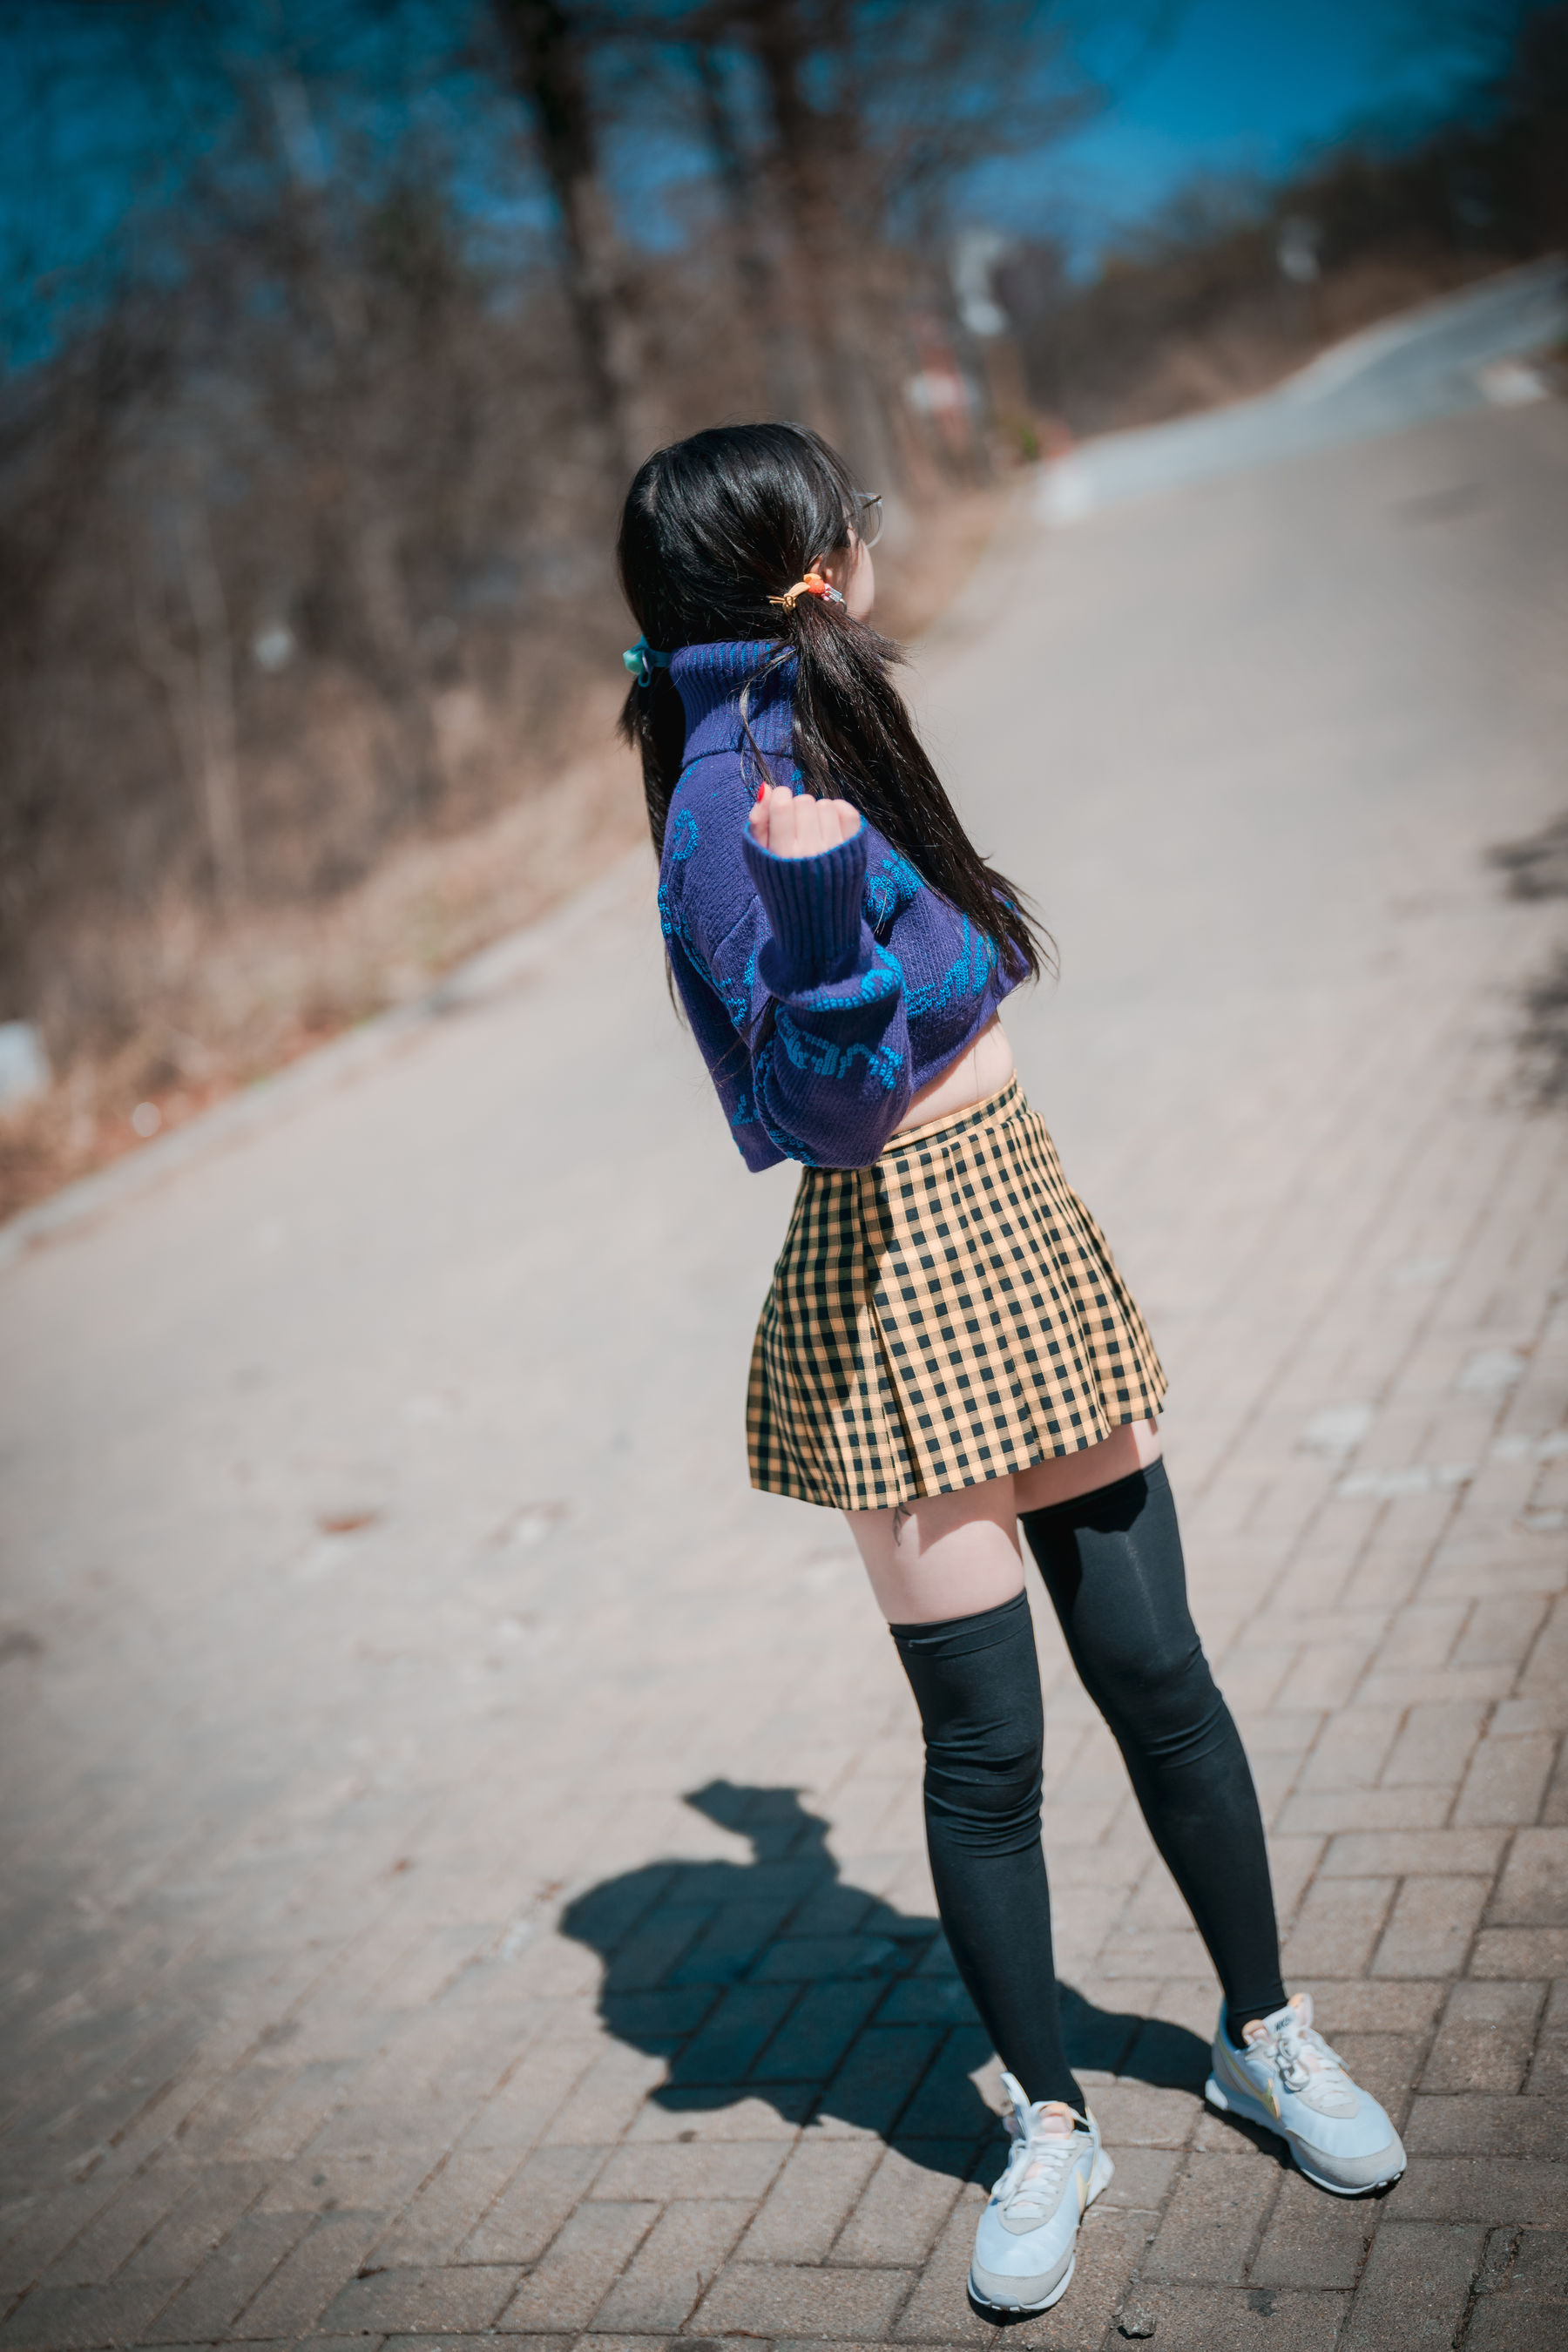 [DJAWA] Yeeun - Early Spring Walk in March Vol.2  第15张